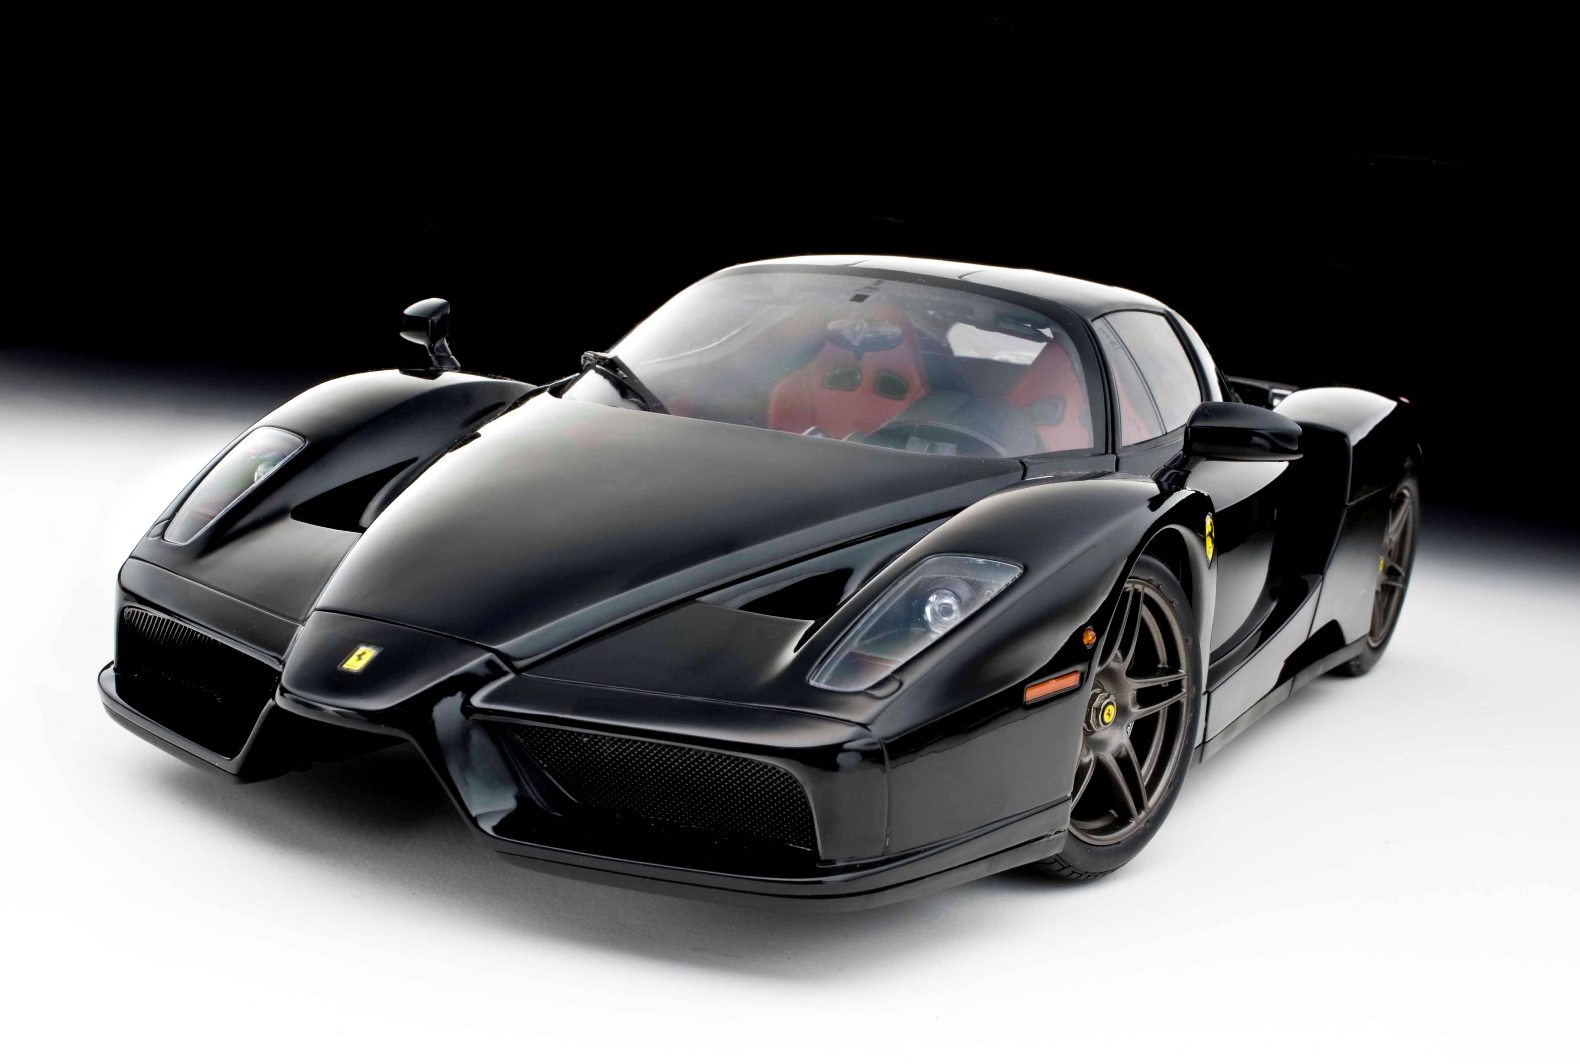 Black Ferrari Sports Car Wallpaper images 1580x1064